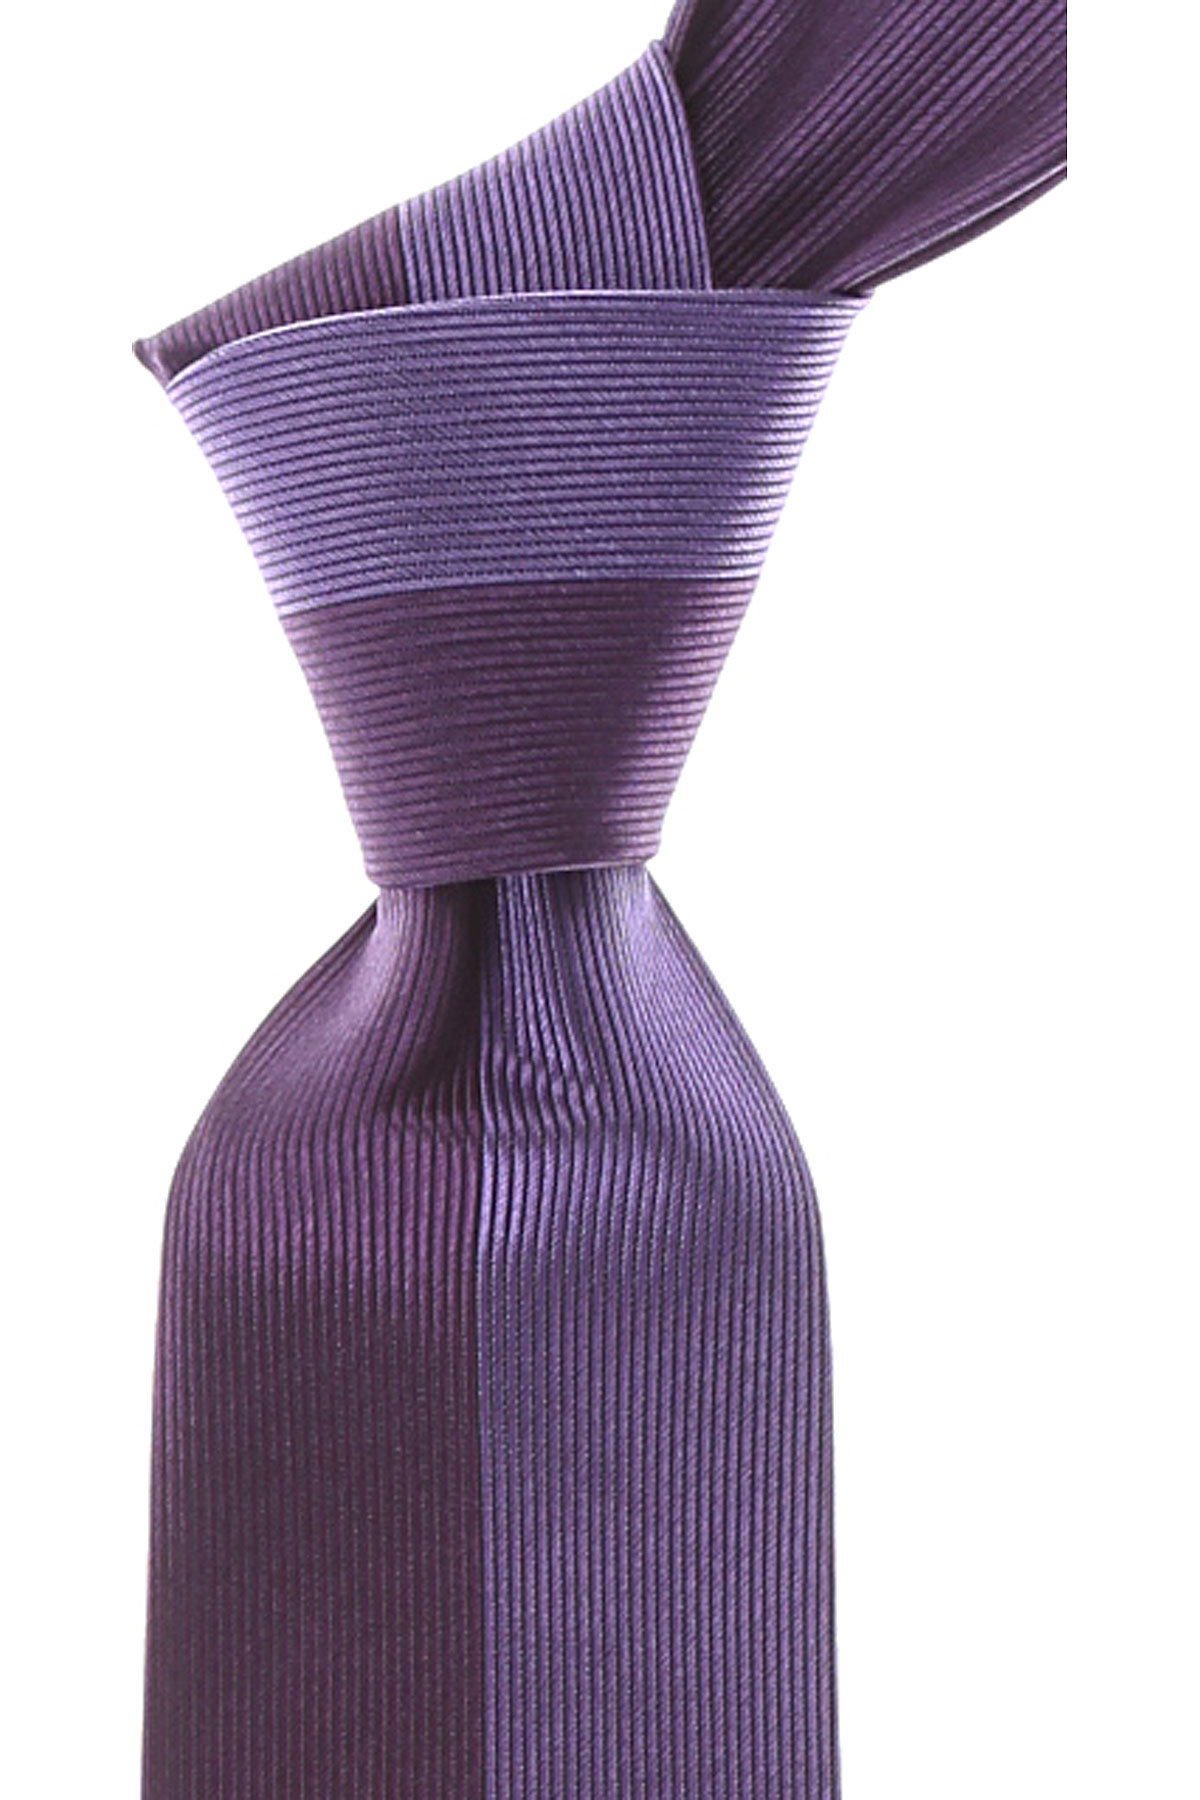 Cravates Gianni Versace , Violet aubergine foncé, Soie, 2017